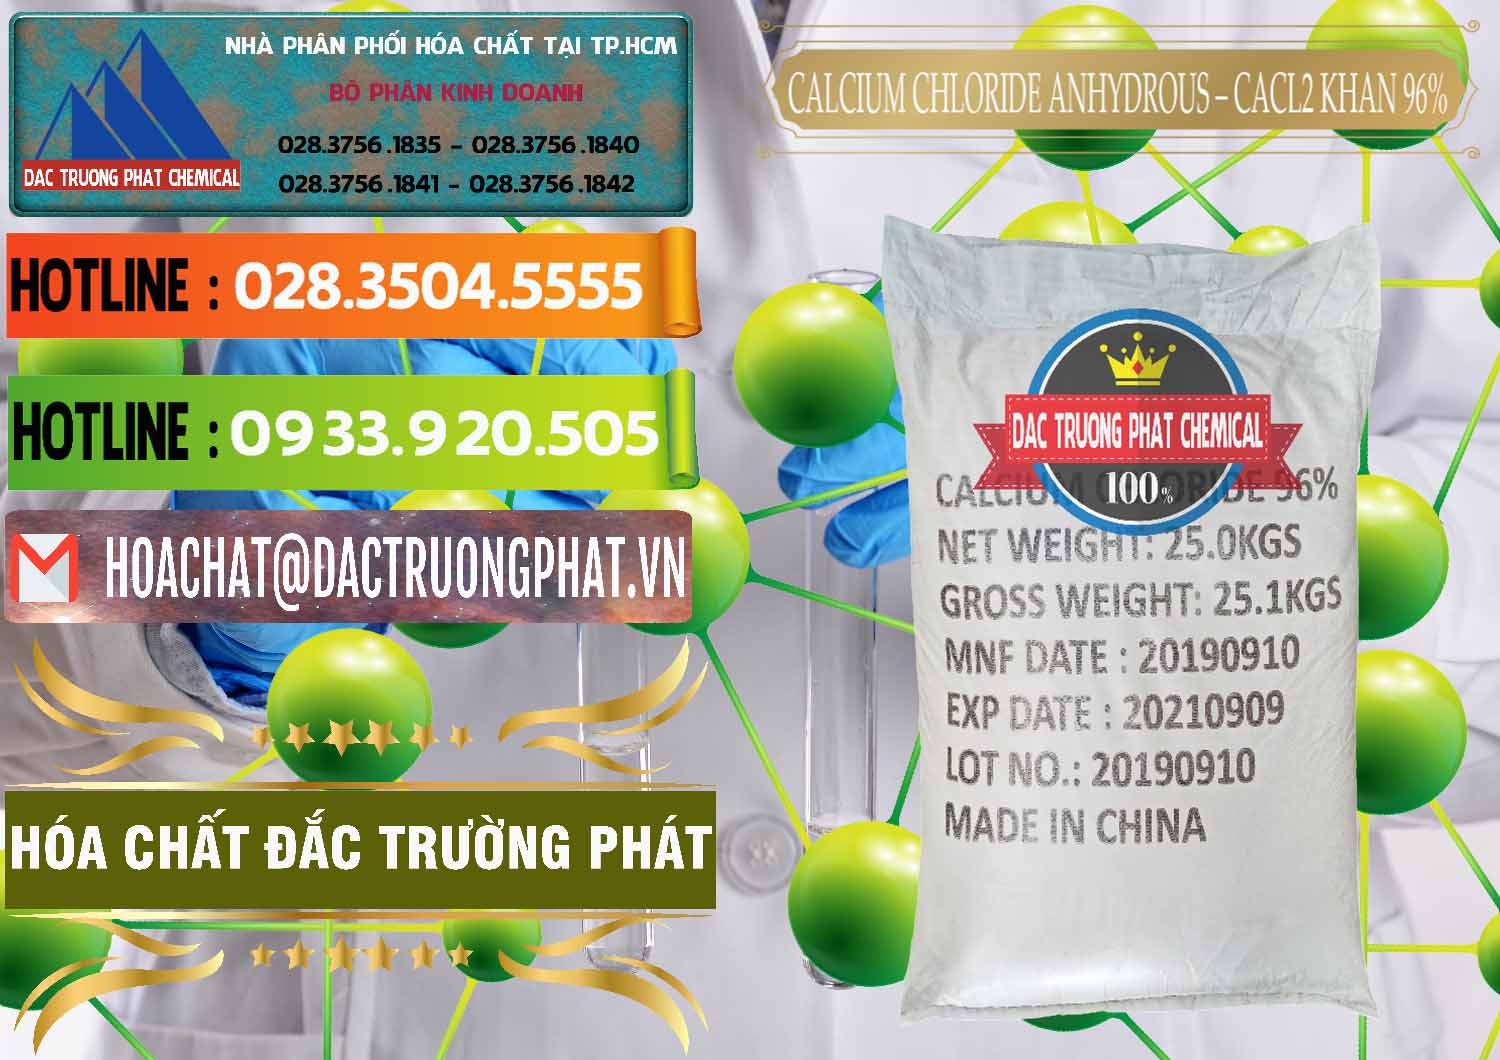 Đơn vị cung ứng & bán CaCl2 – Canxi Clorua Anhydrous Khan 96% Trung Quốc China - 0043 - Đơn vị chuyên phân phối và nhập khẩu hóa chất tại TP.HCM - cungcaphoachat.com.vn